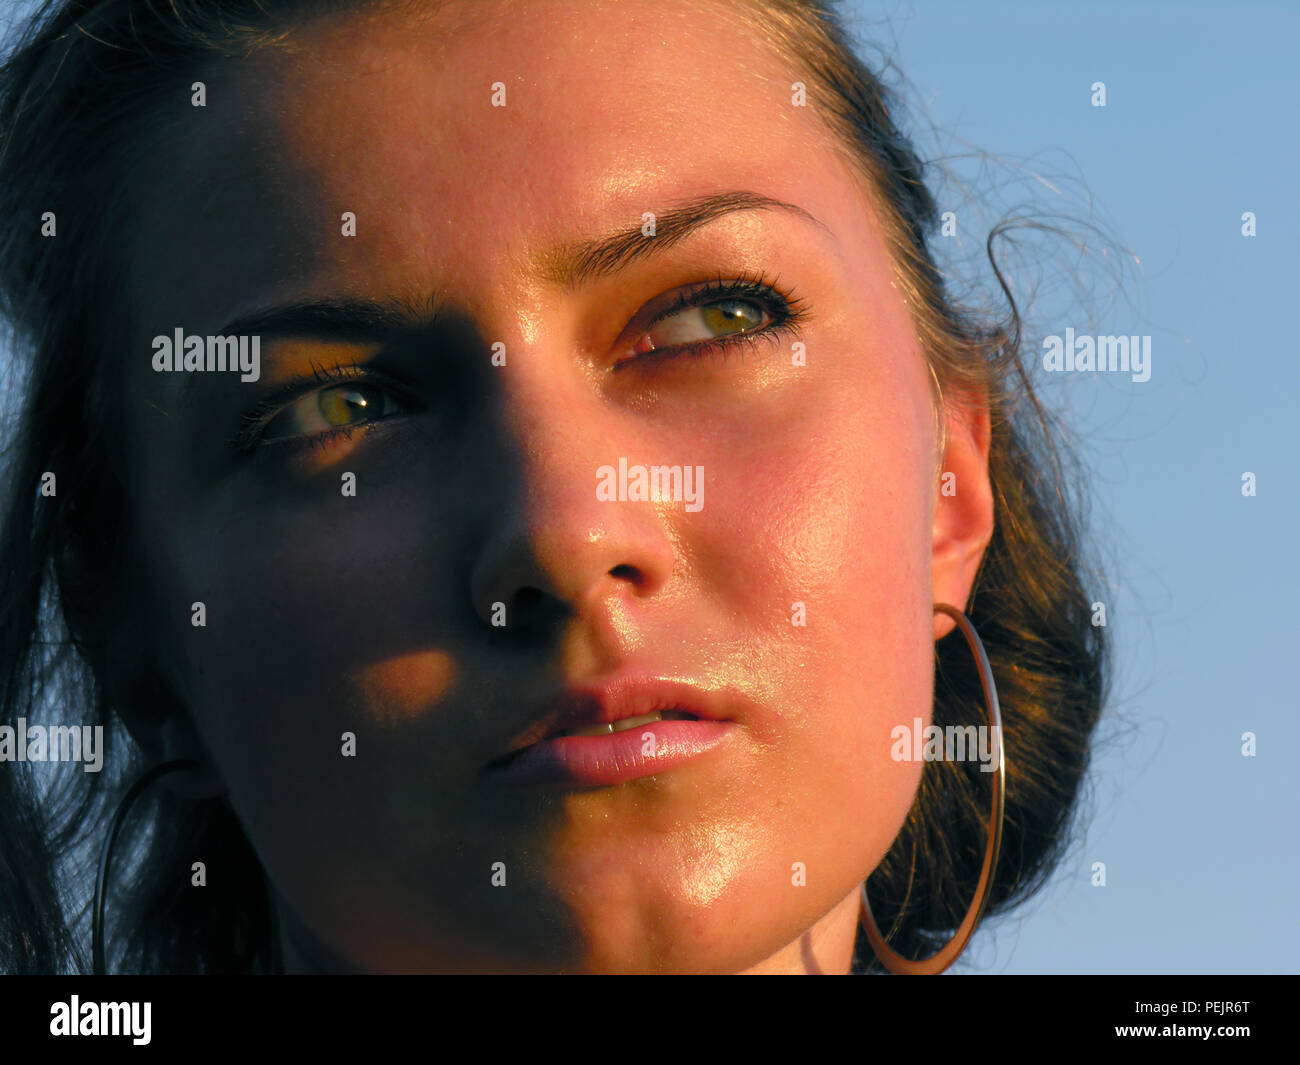 Nahaufnahme Porträt der jungen stark bräunt Frau in das heiße Wetter, am Abend licht Stockfoto